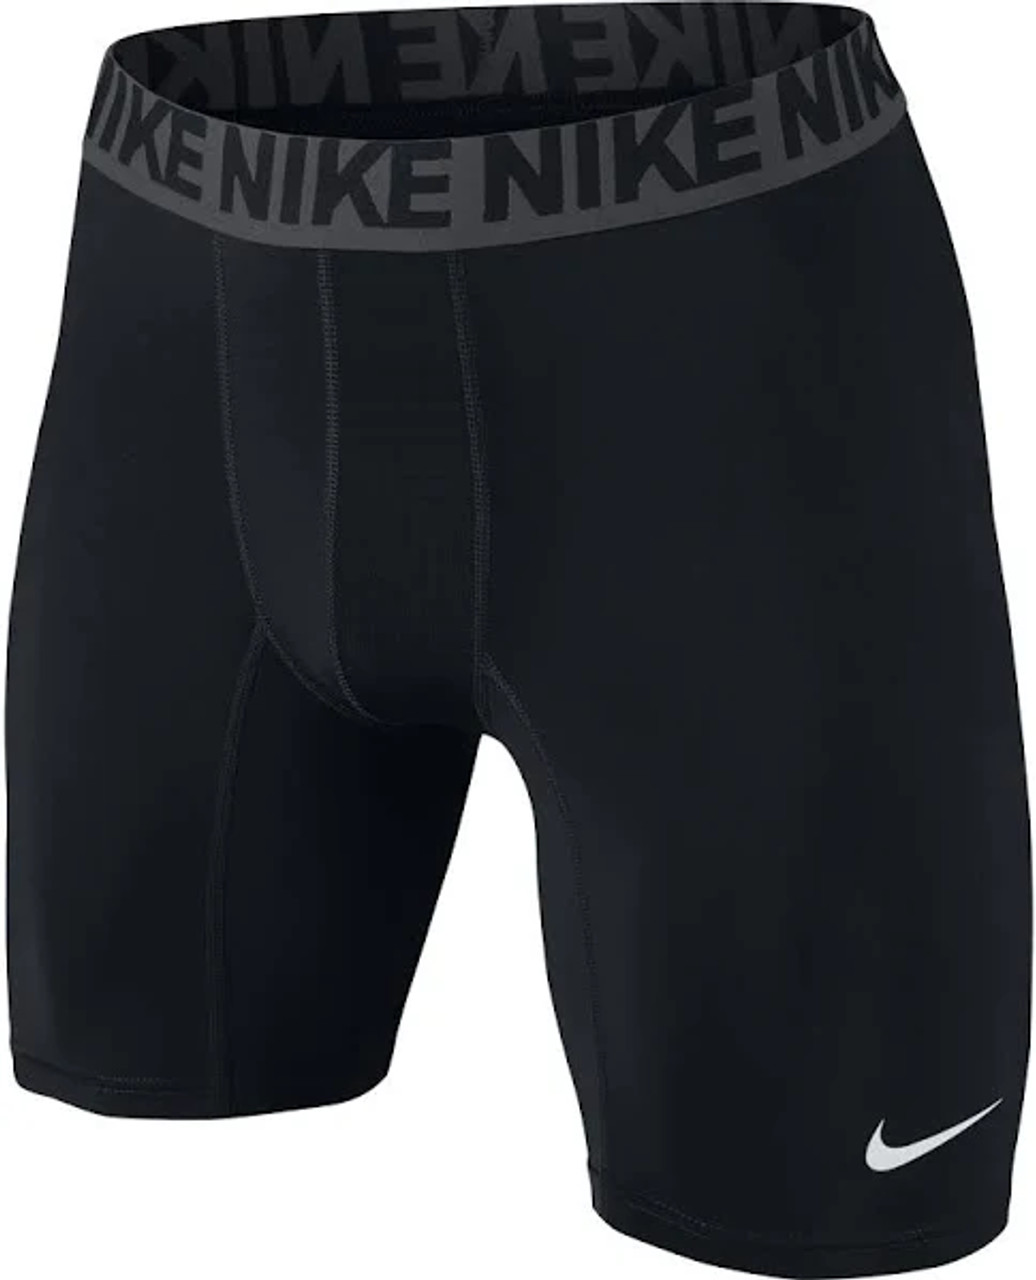 Nike Pro Classic Compression Shorts - Men's - Saint Paul's Place